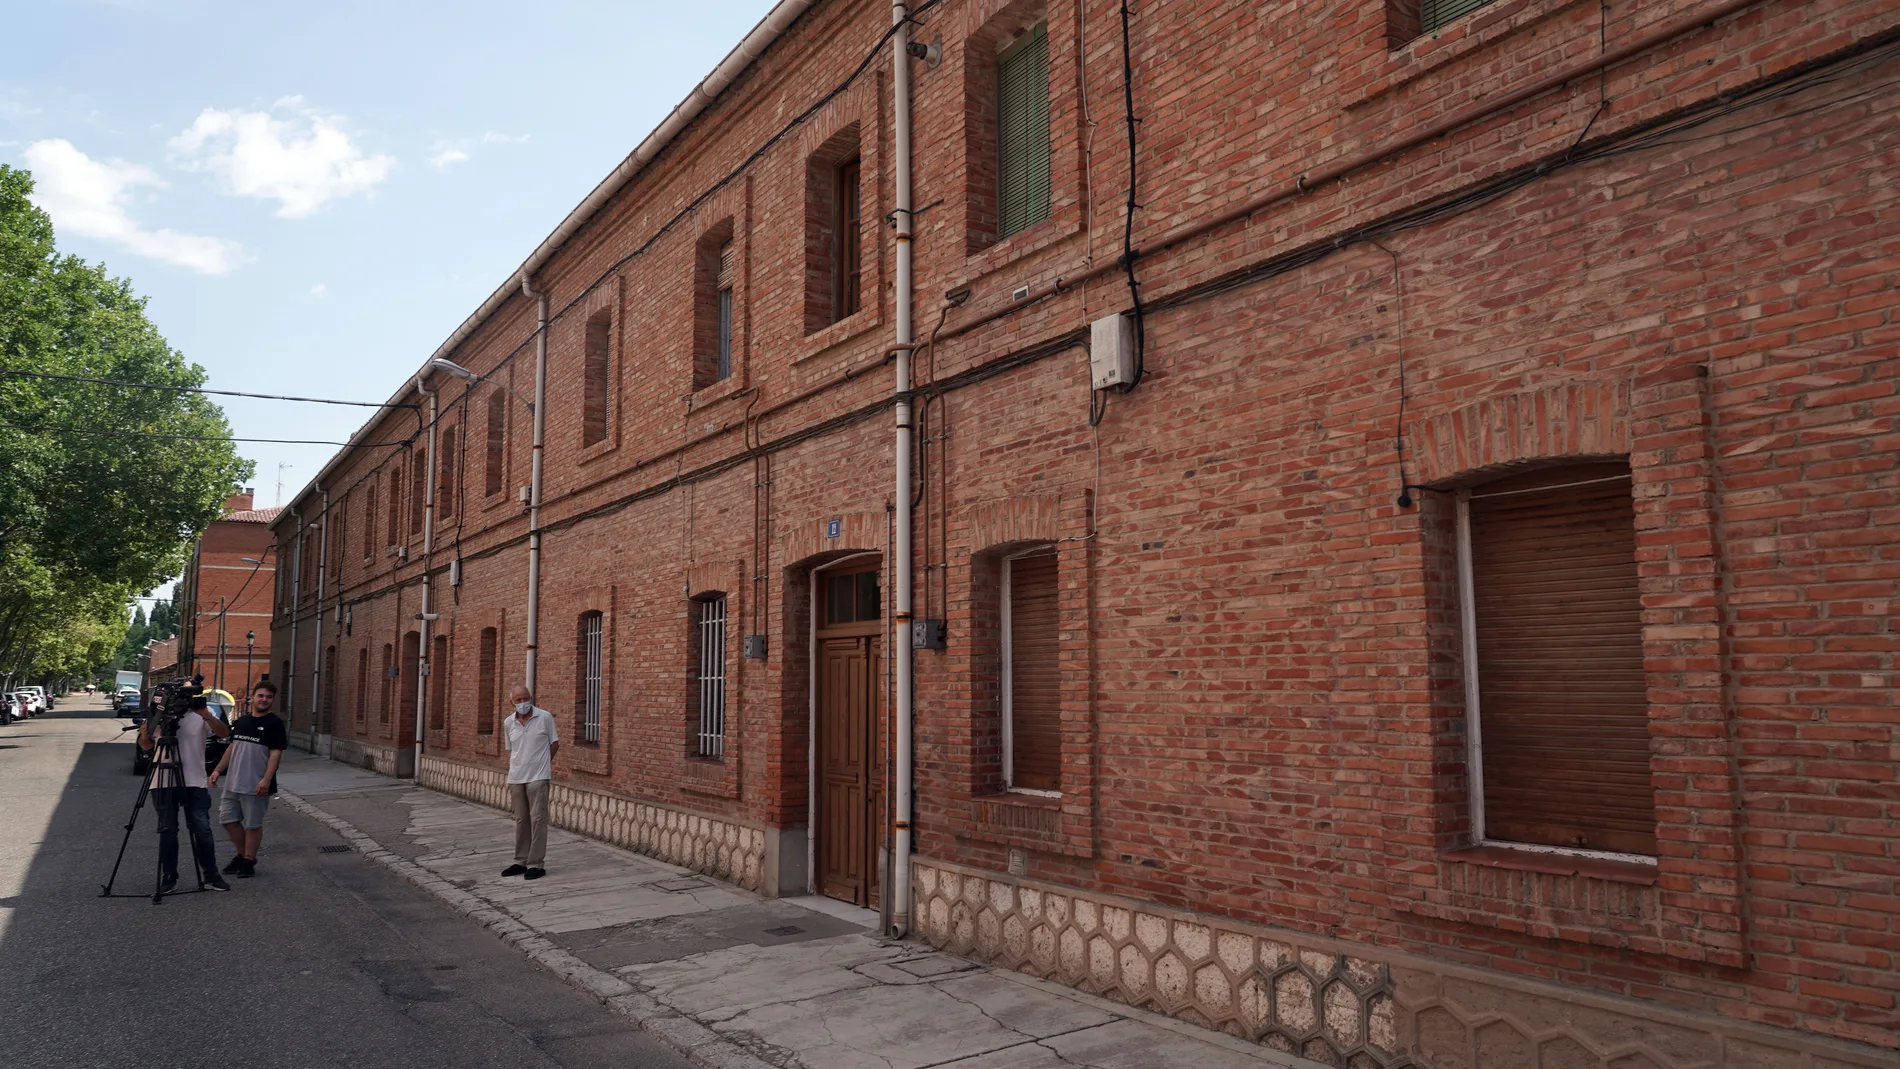 Viviendas de la CHD en la calle Canal en Valladolid para rehabilitarlas y destinarlas al alquiler joven